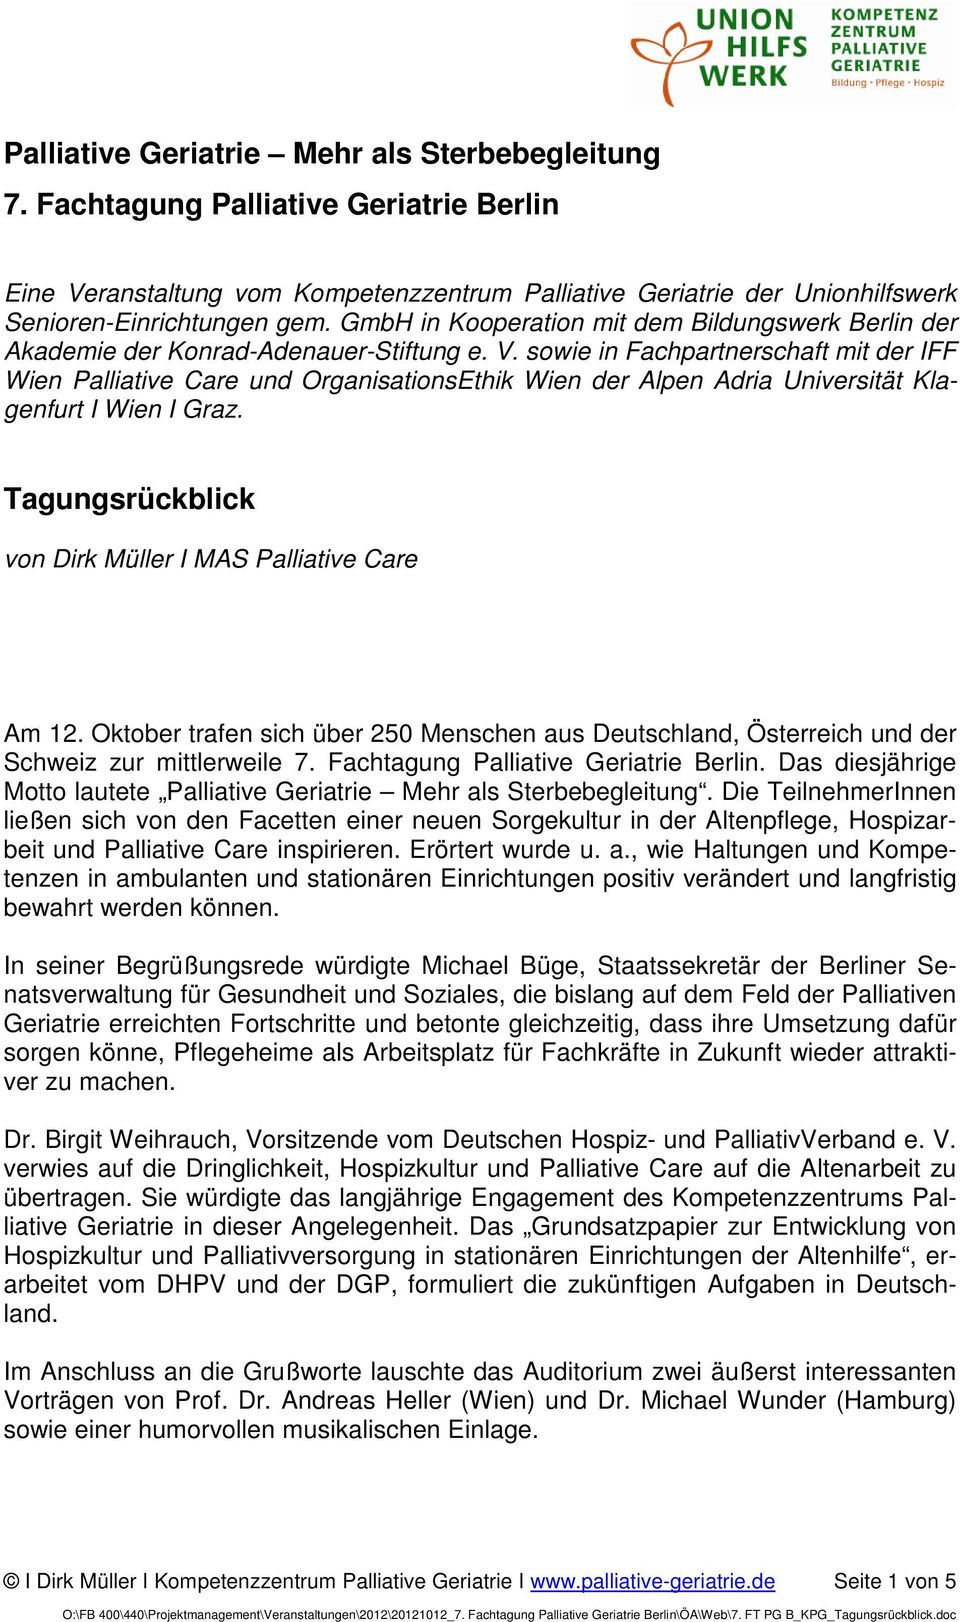 sowie in Fachpartnerschaft mit der IFF Wien Palliative Care und OrganisationsEthik Wien der Alpen Adria Universität Klagenfurt I Wien I Graz.